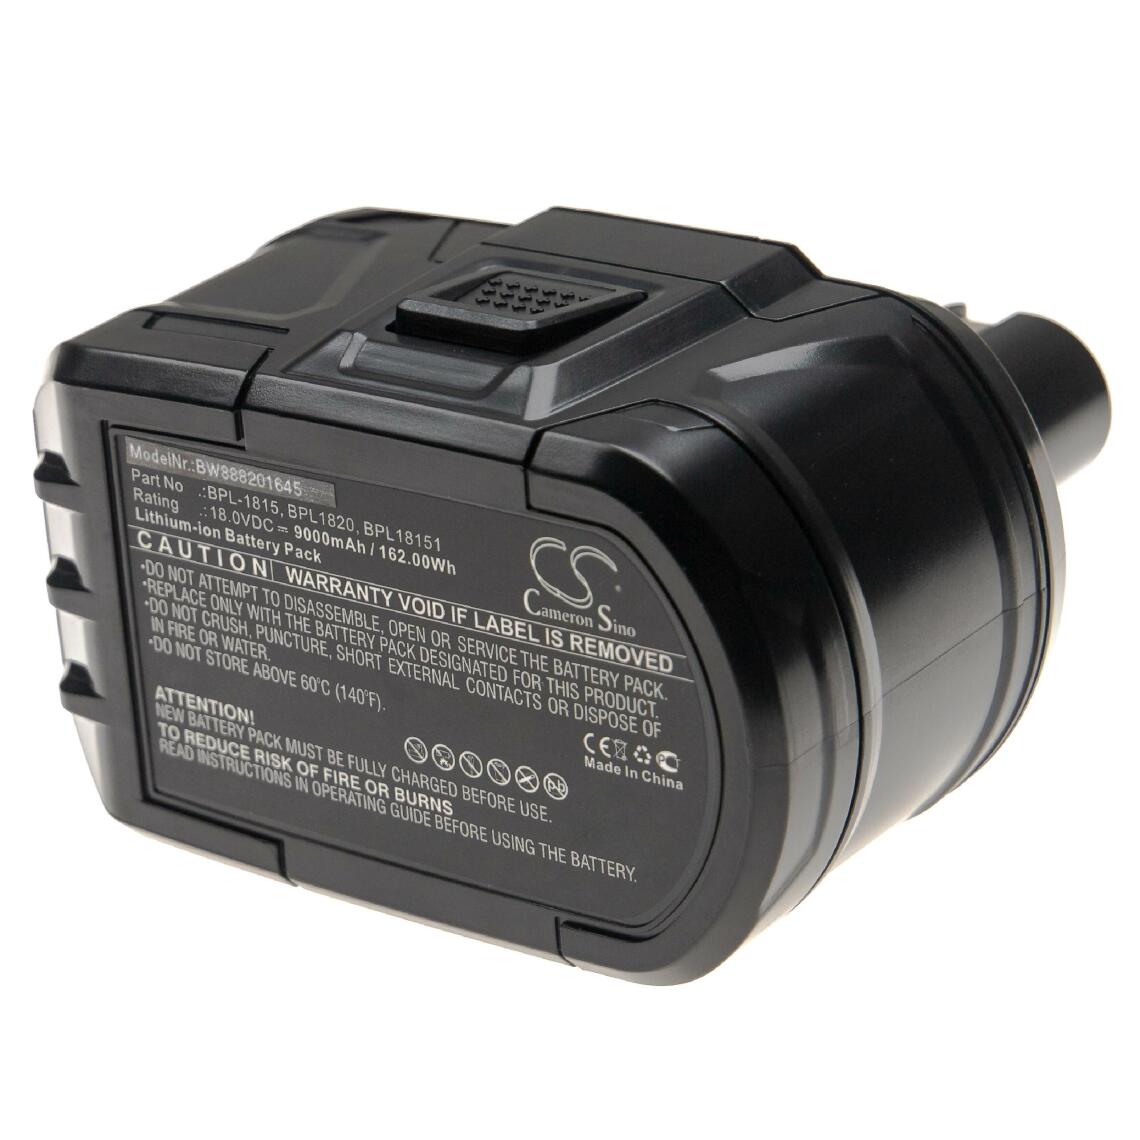 Vhbw - vhbw Batterie compatible avec Ryobi CRP-1801, CRP-1801/DM, CRP-1801D, CRS 1803, CRS-180L, CSL-180L outil électrique (9000mAh Li-Ion 18V) - Clouterie